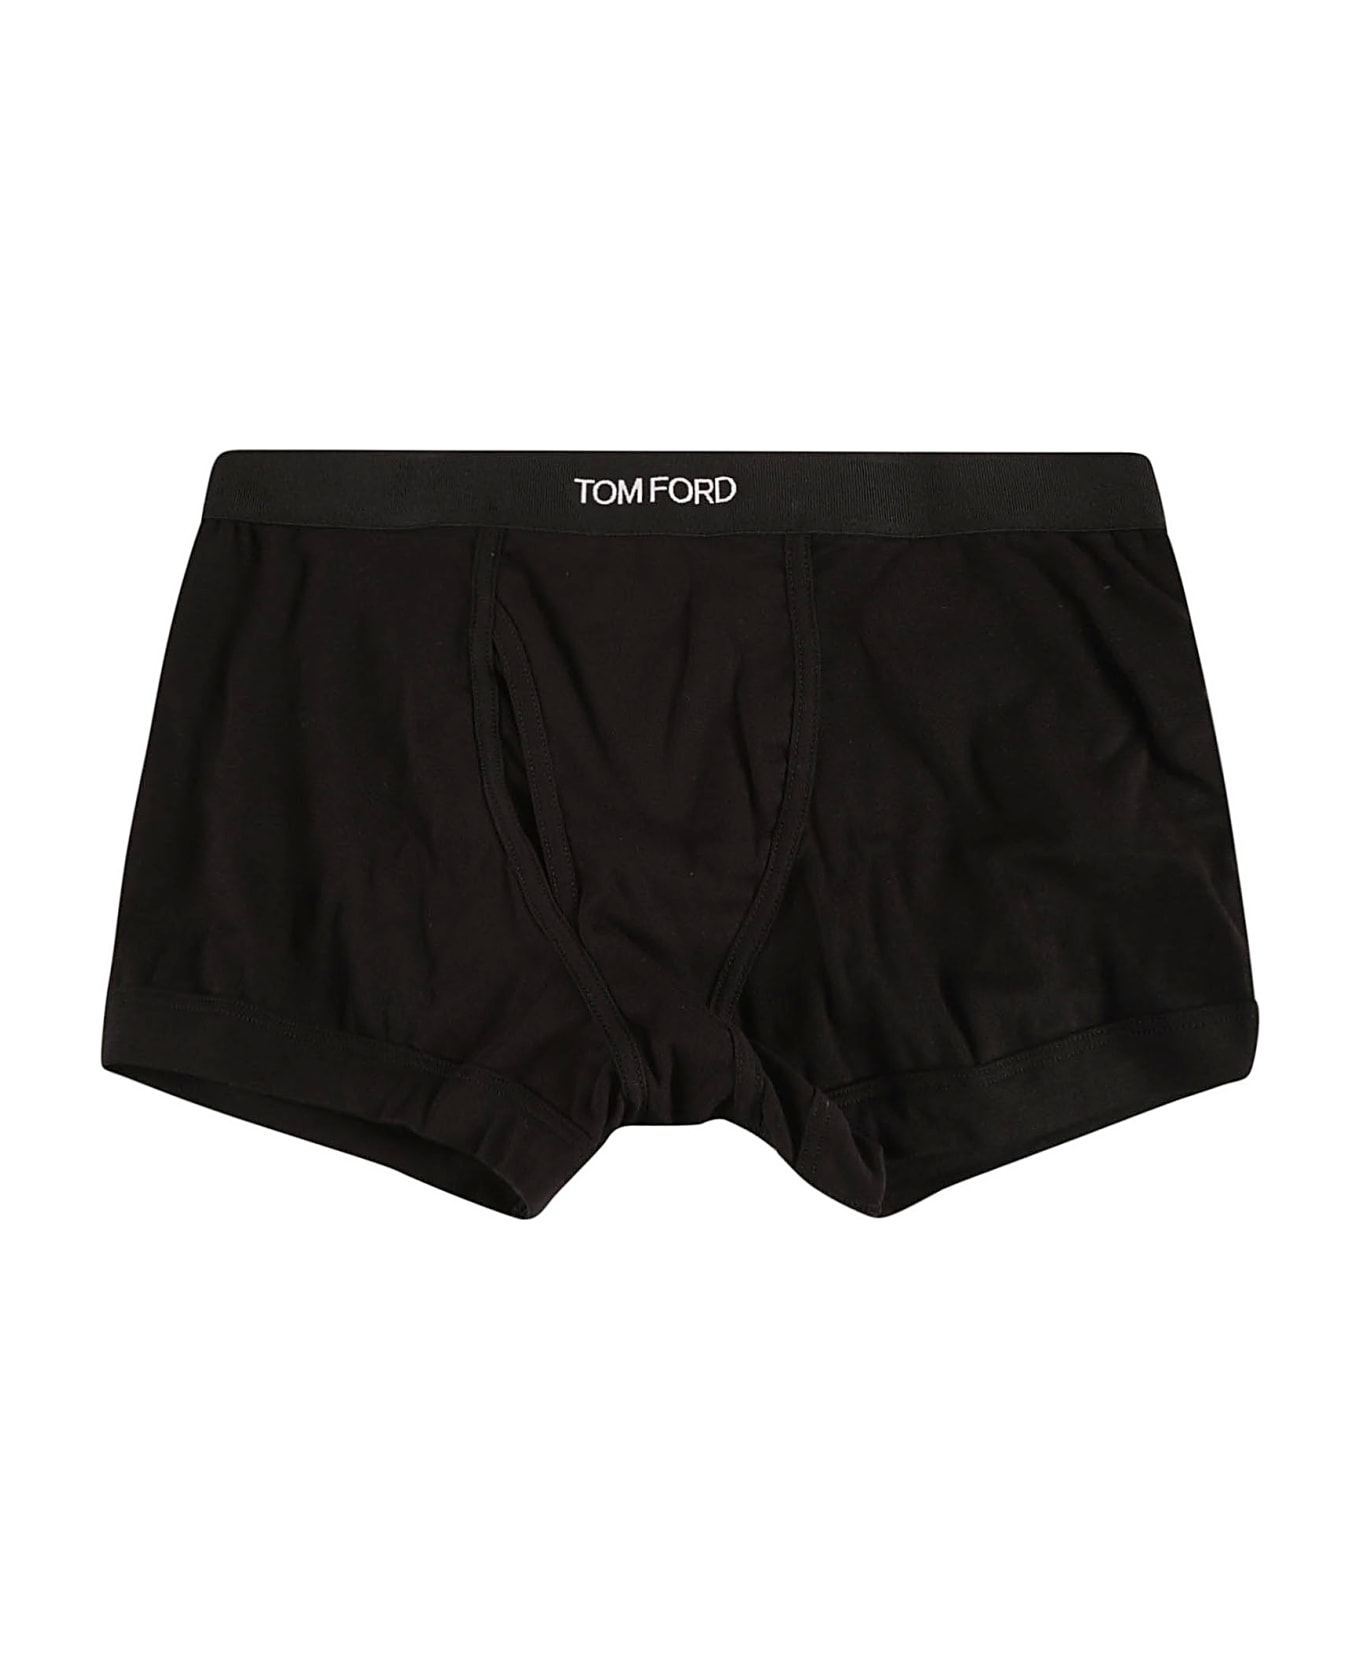 Tom Ford Logo Waist Plain Boxer Shorts - Black